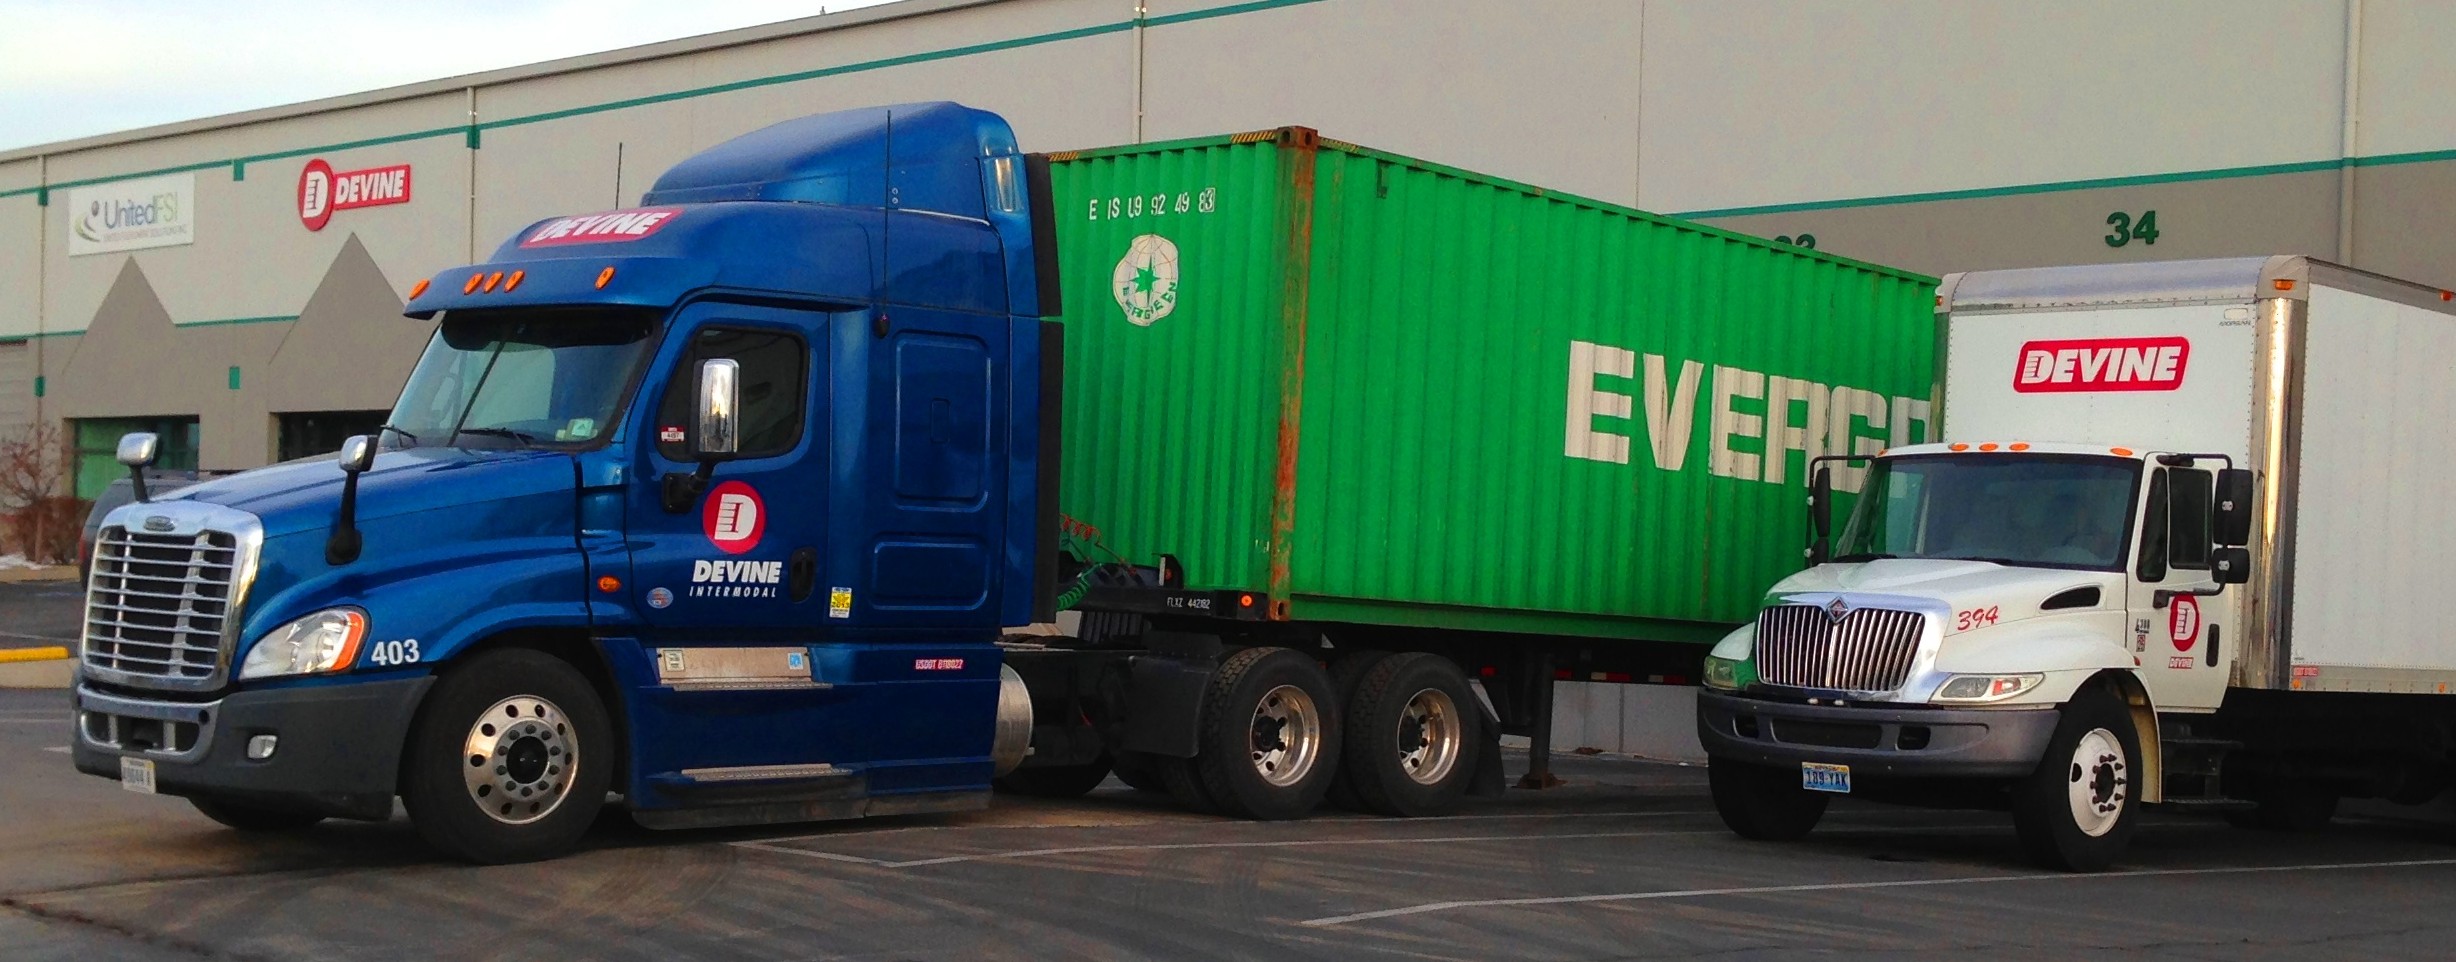 Reno Warehouse Truck + Van 003 A